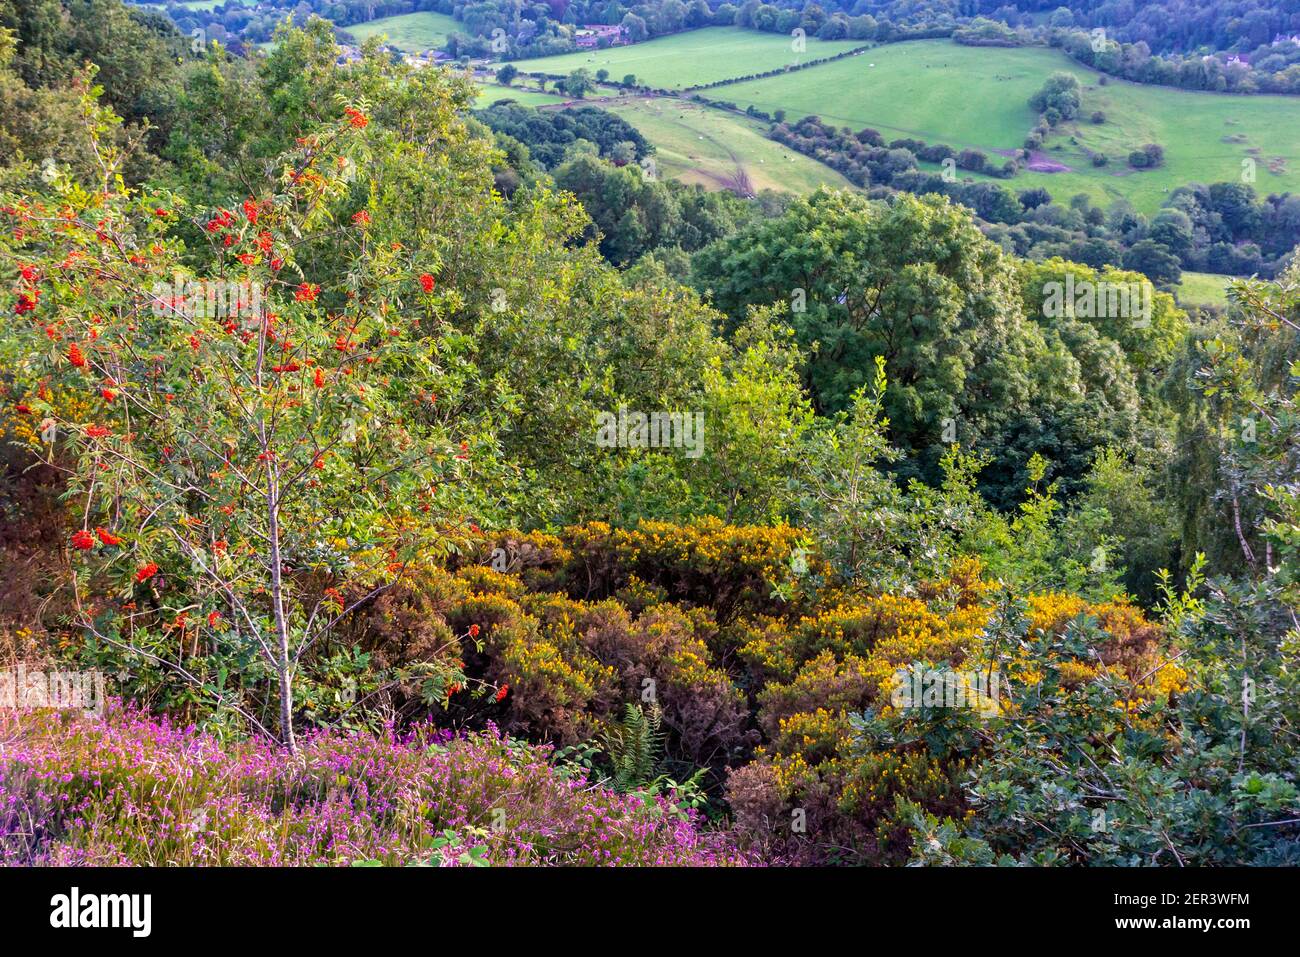 Vue sur le paysage à Starholmes près de Matlock dans le Derbyshire Dales Peak District Angleterre Royaume-Uni avec des arbres dans la couleur de la fin de l'été. Banque D'Images